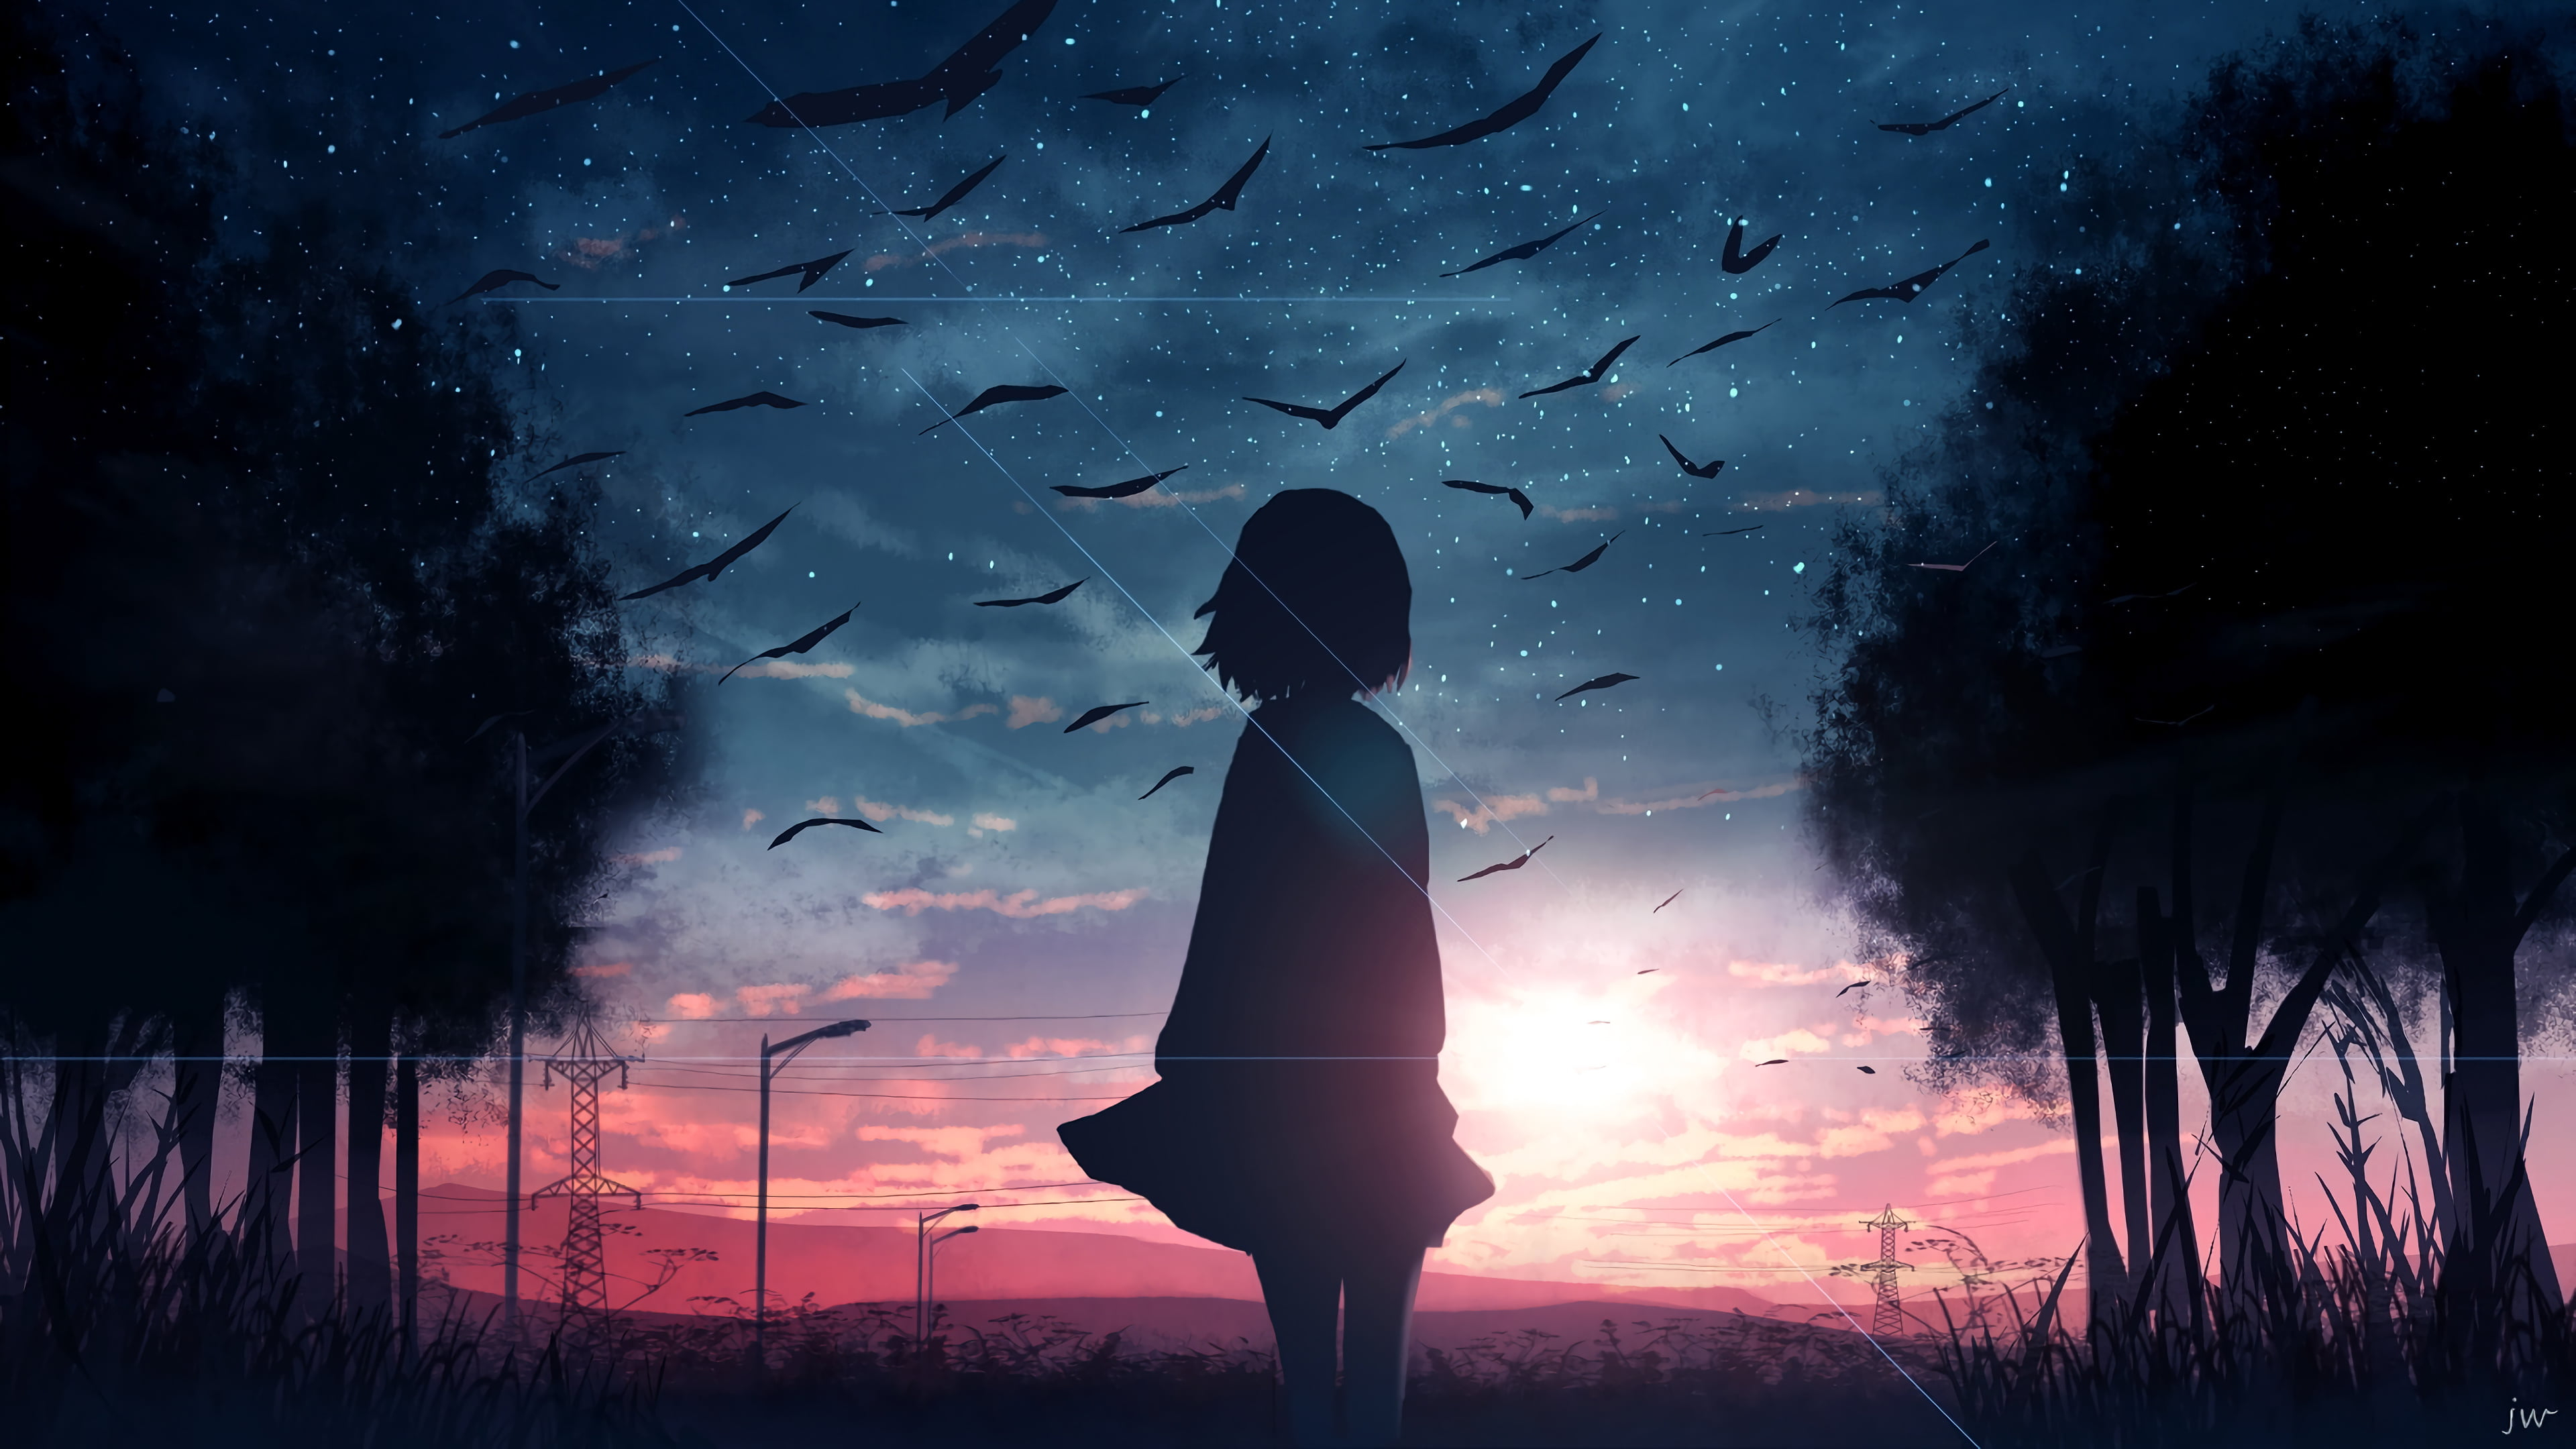 Anime Girl 4k Wallpaper by CYBERxYT on DeviantArt